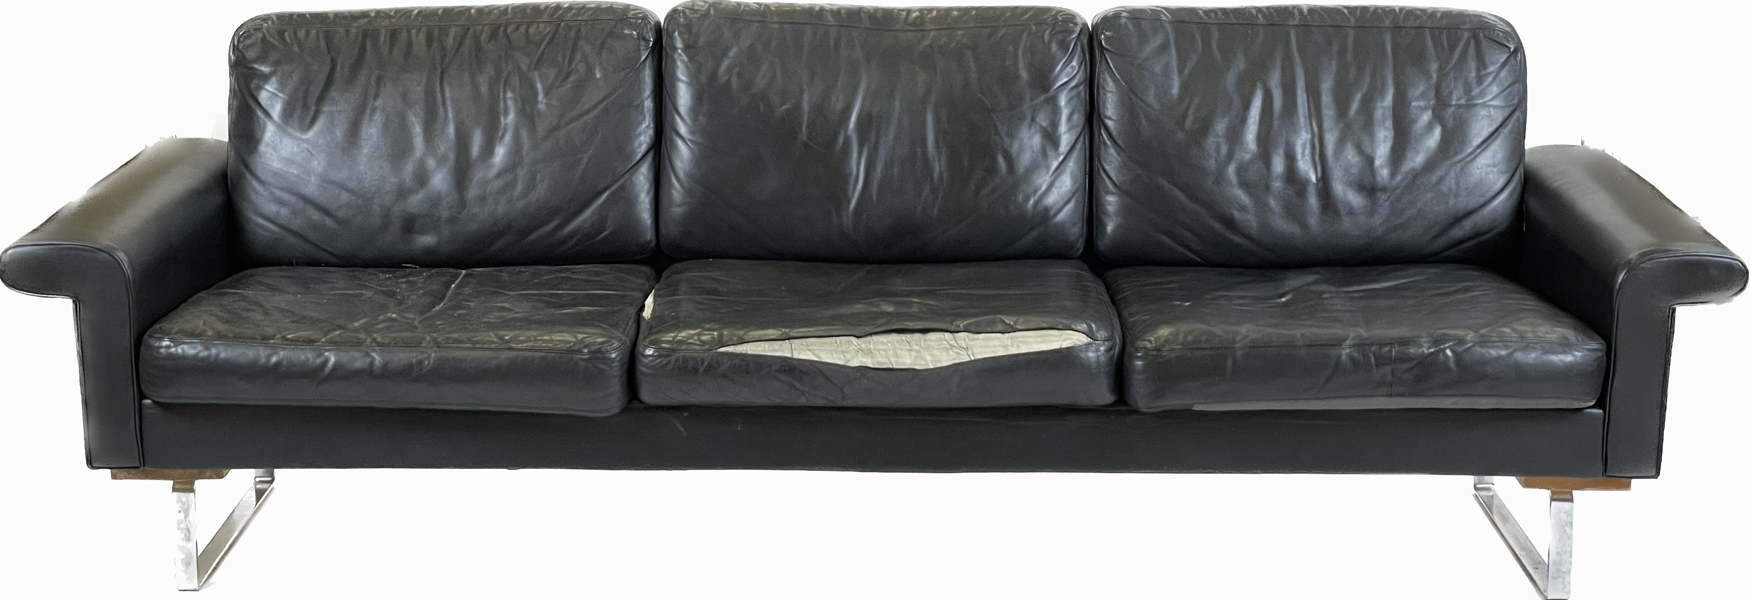 Okänd designer för ASKO, 1960-tal, soffa, svart läderklädsel på stålmedar, l 228 cm, 2 sömmar upplupna, lagad och renoverad_38650a_8dc65278c742be8_lg.jpeg